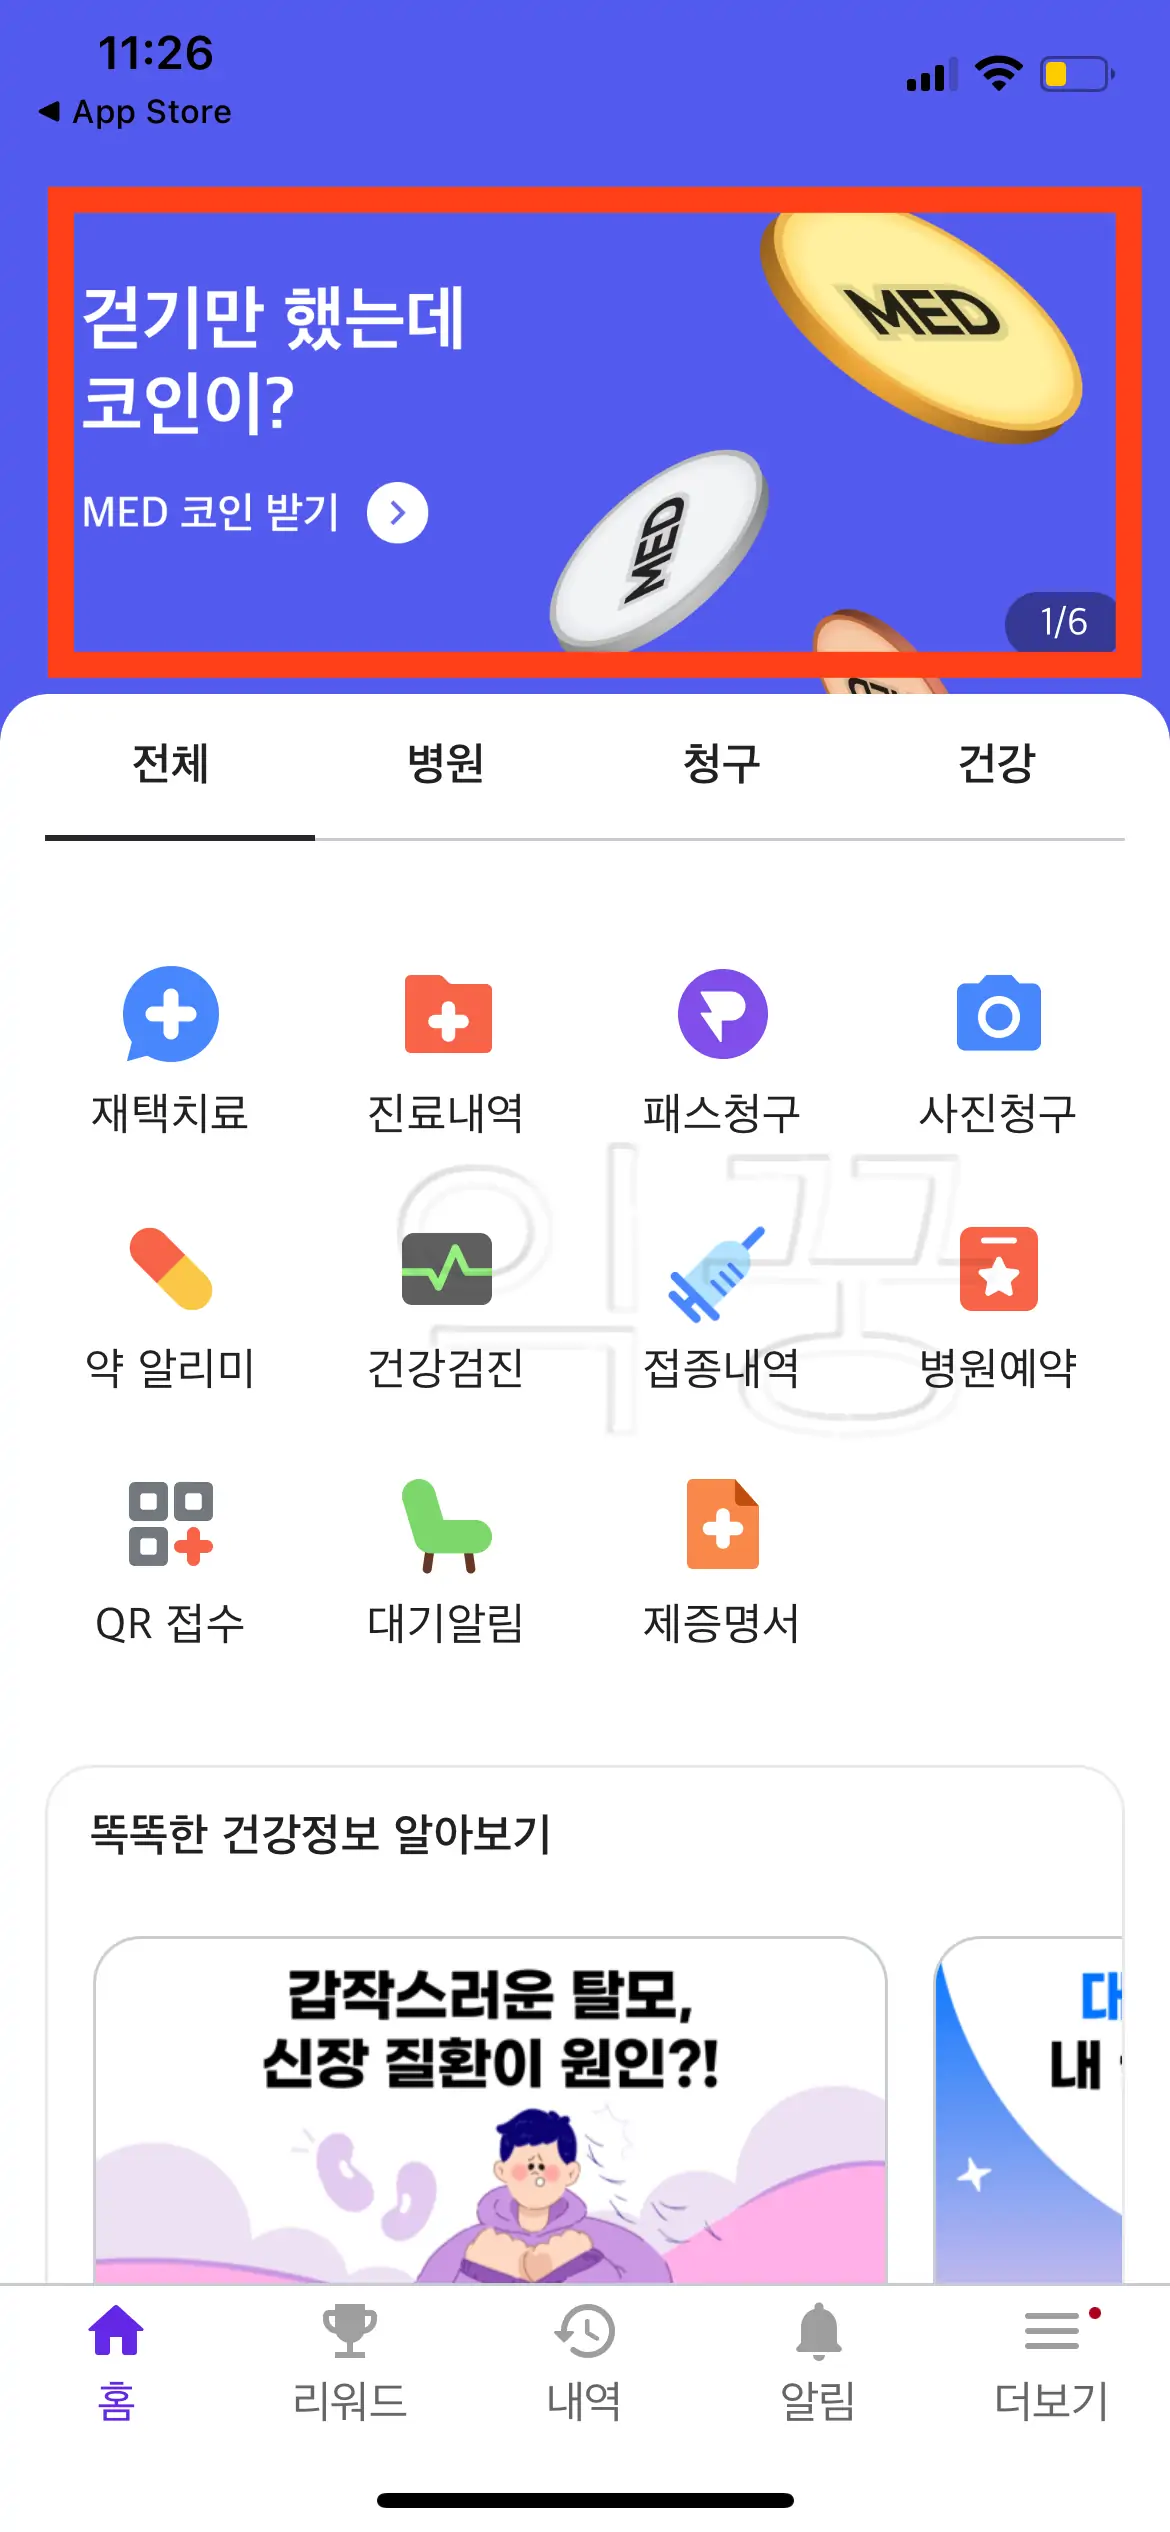 메디패스 앱 상단 광고